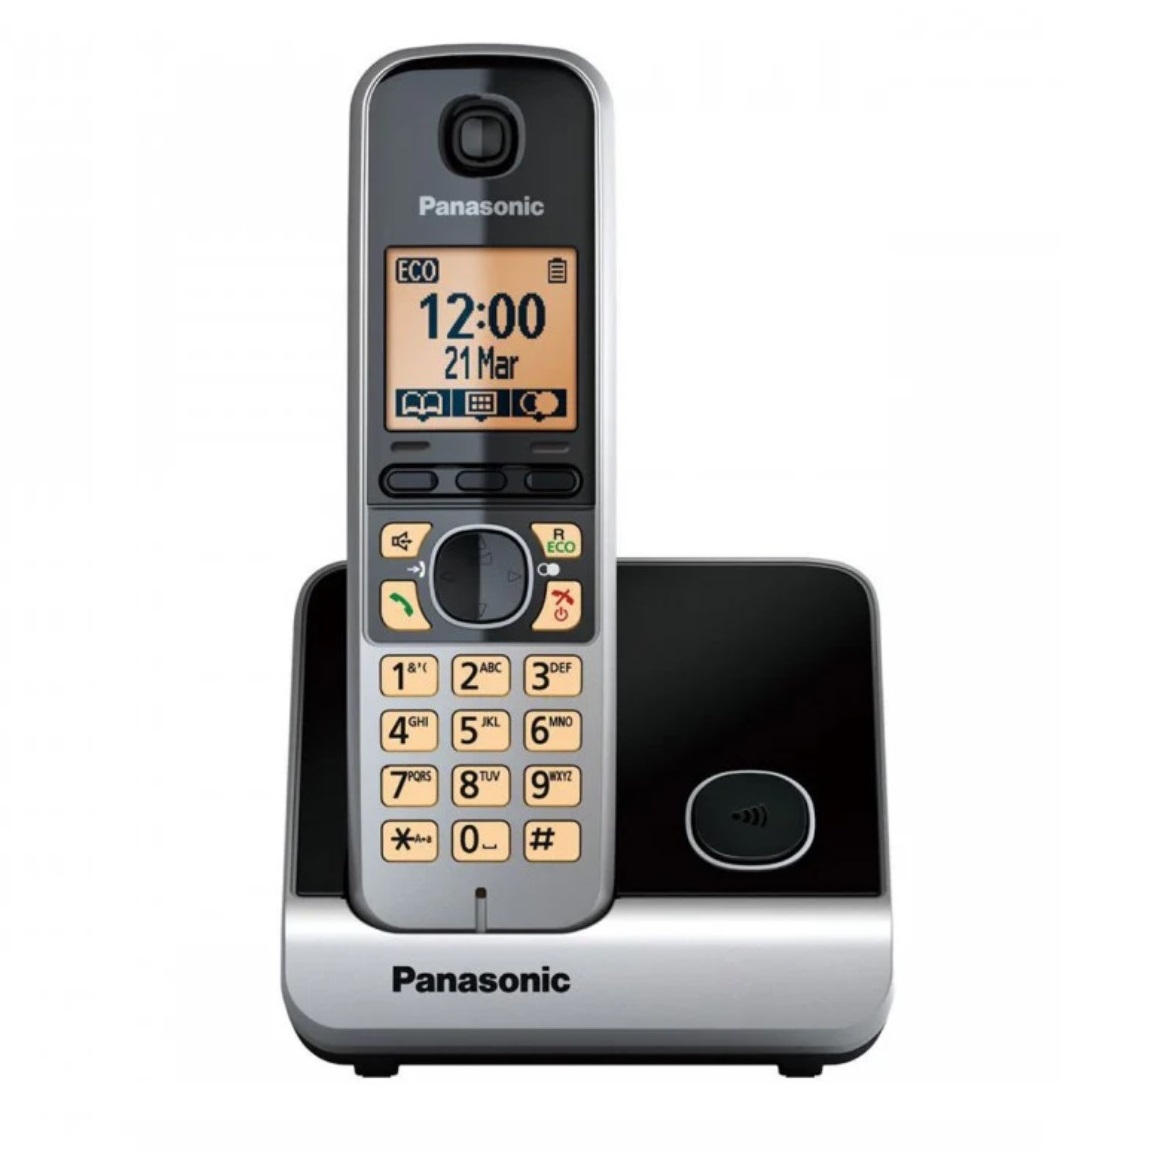 نکته خرید - قیمت روز تلفن بی سیم پاناسونیک مدل KX-TG6711 خرید